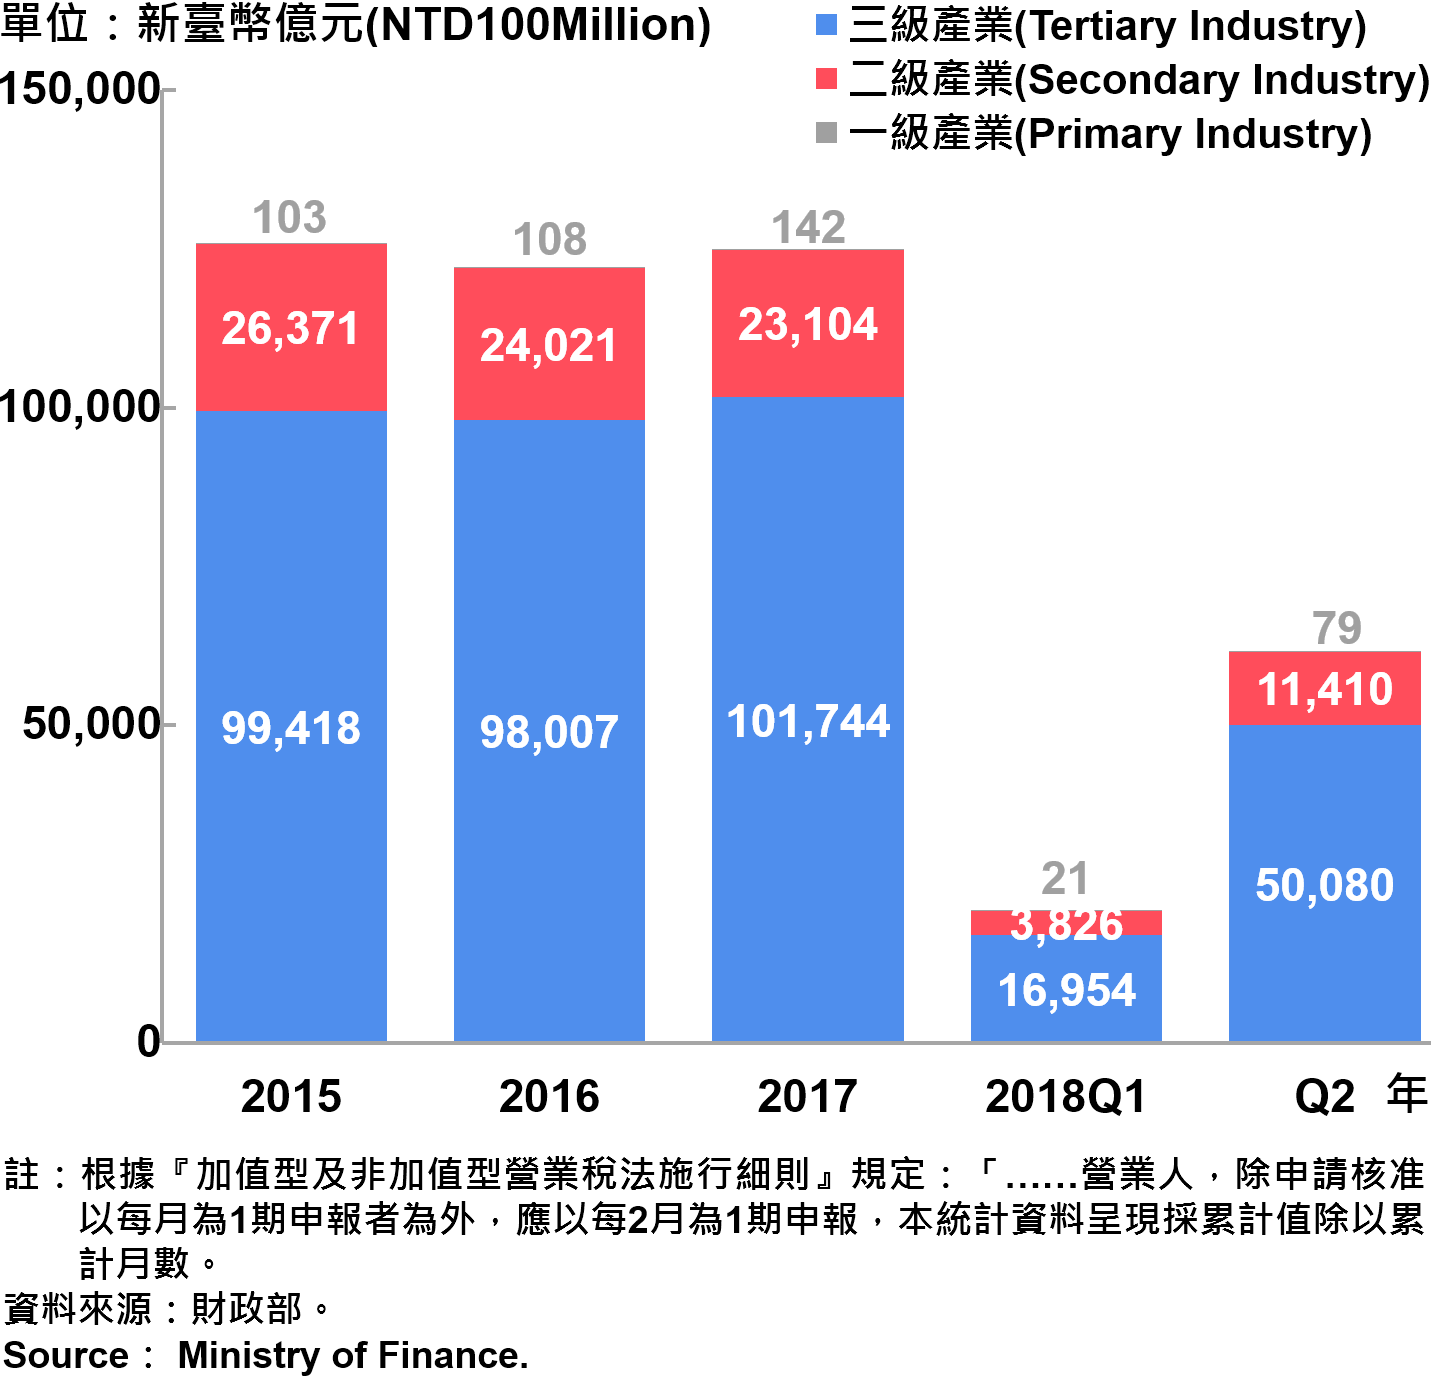 臺北市一二三級產業營業額—2018Q2 Sales of Primary , Secondary and Tertiary Industry in Taipei City—2018Q2